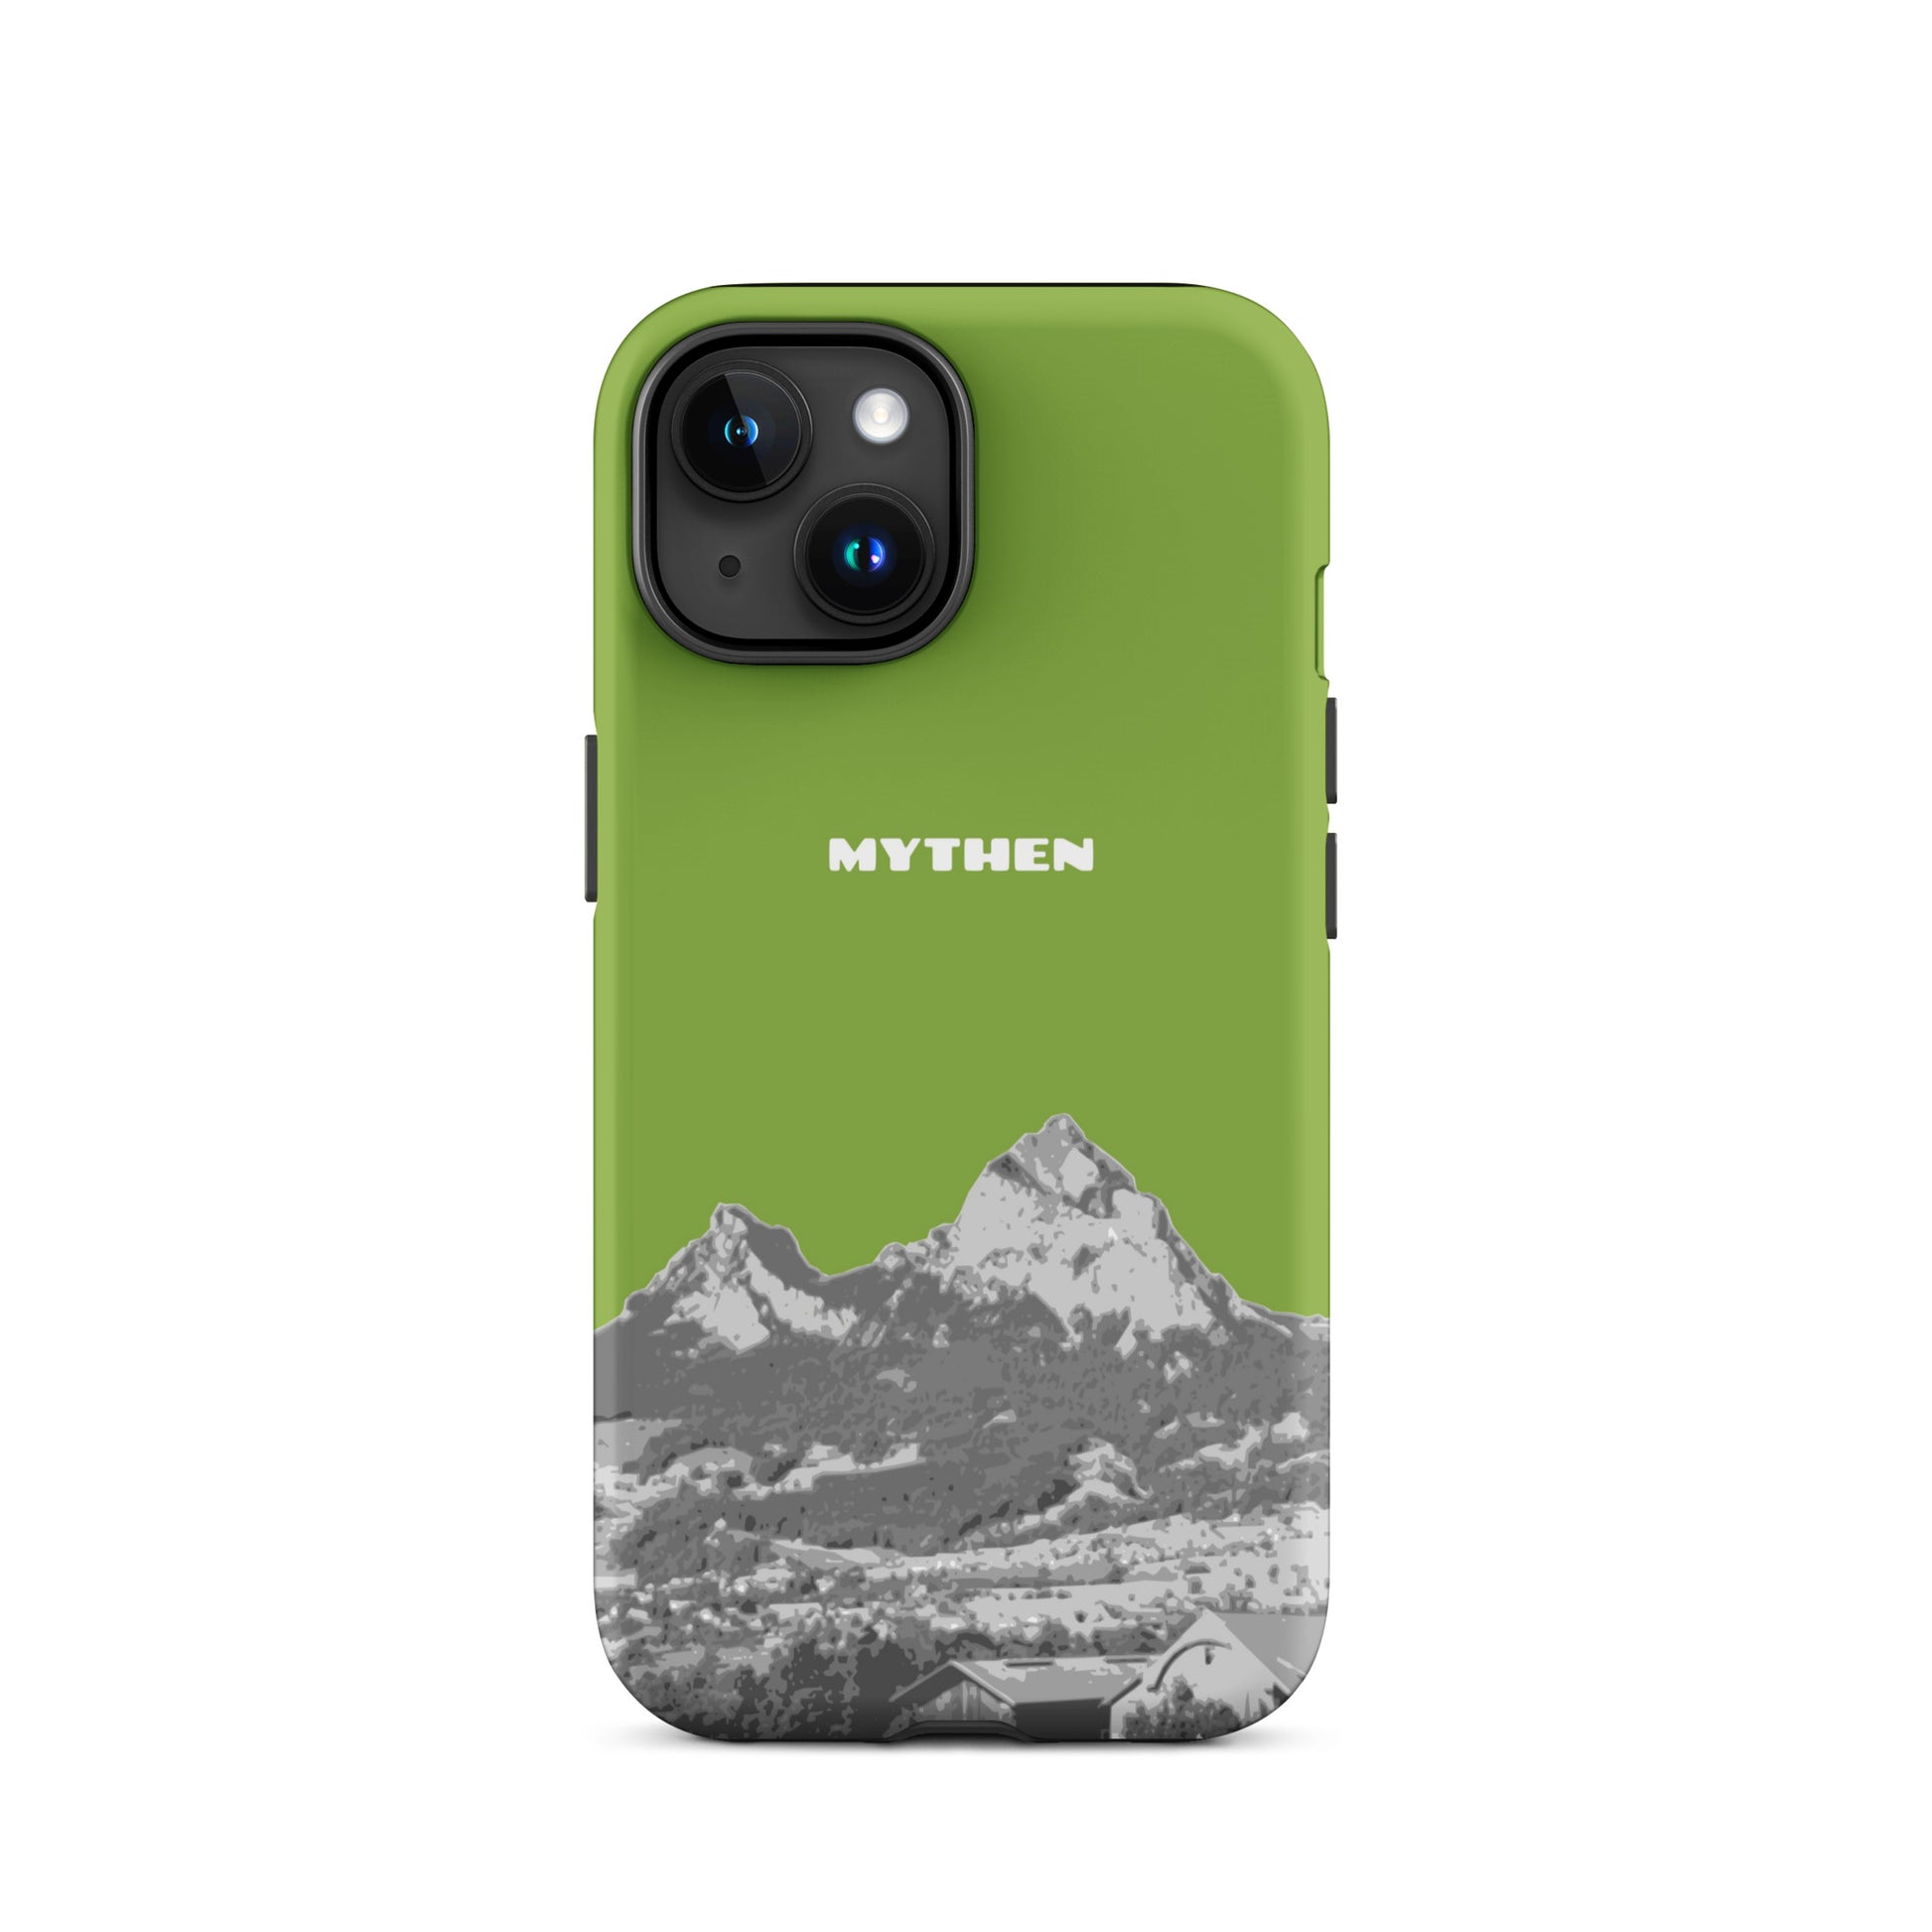 Hülle für das iPhone 15 von Apple in der Farbe Gelbgrün, die den Grossen Mythen und den Kleinen Mythen bei Schwyz zeigt. 